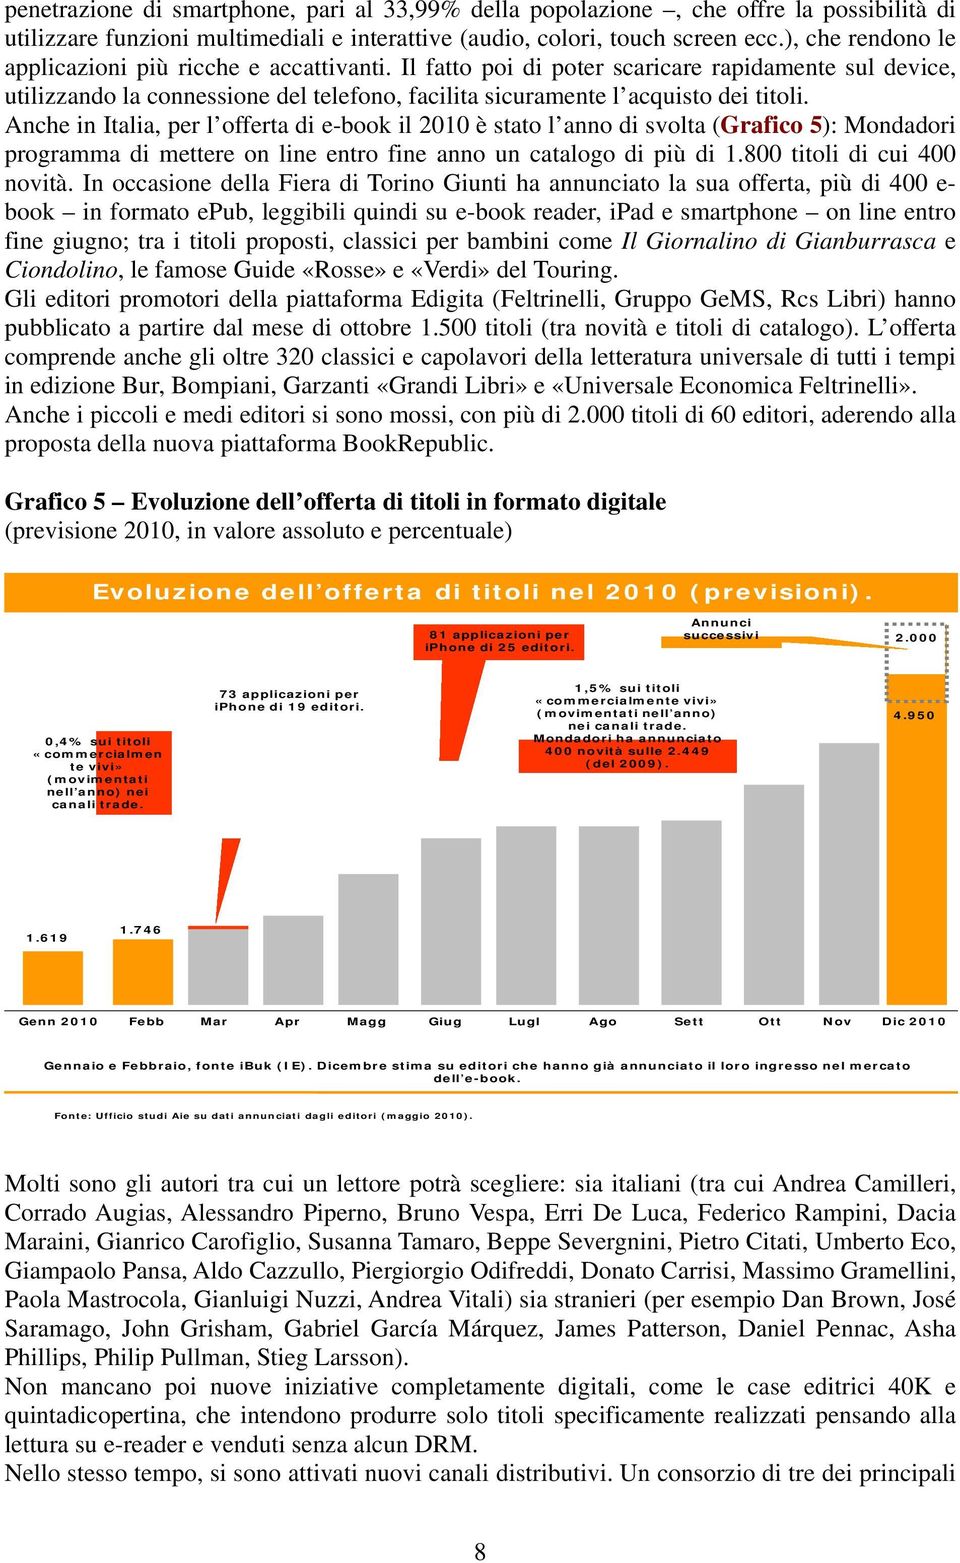 Anche in Italia, per l offerta di e-book il 2010 è stato l anno di svolta (Grafico 5): Mondadori programma di mettere on line entro fine anno un catalogo di più di 1.800 titoli di cui 400 novità.